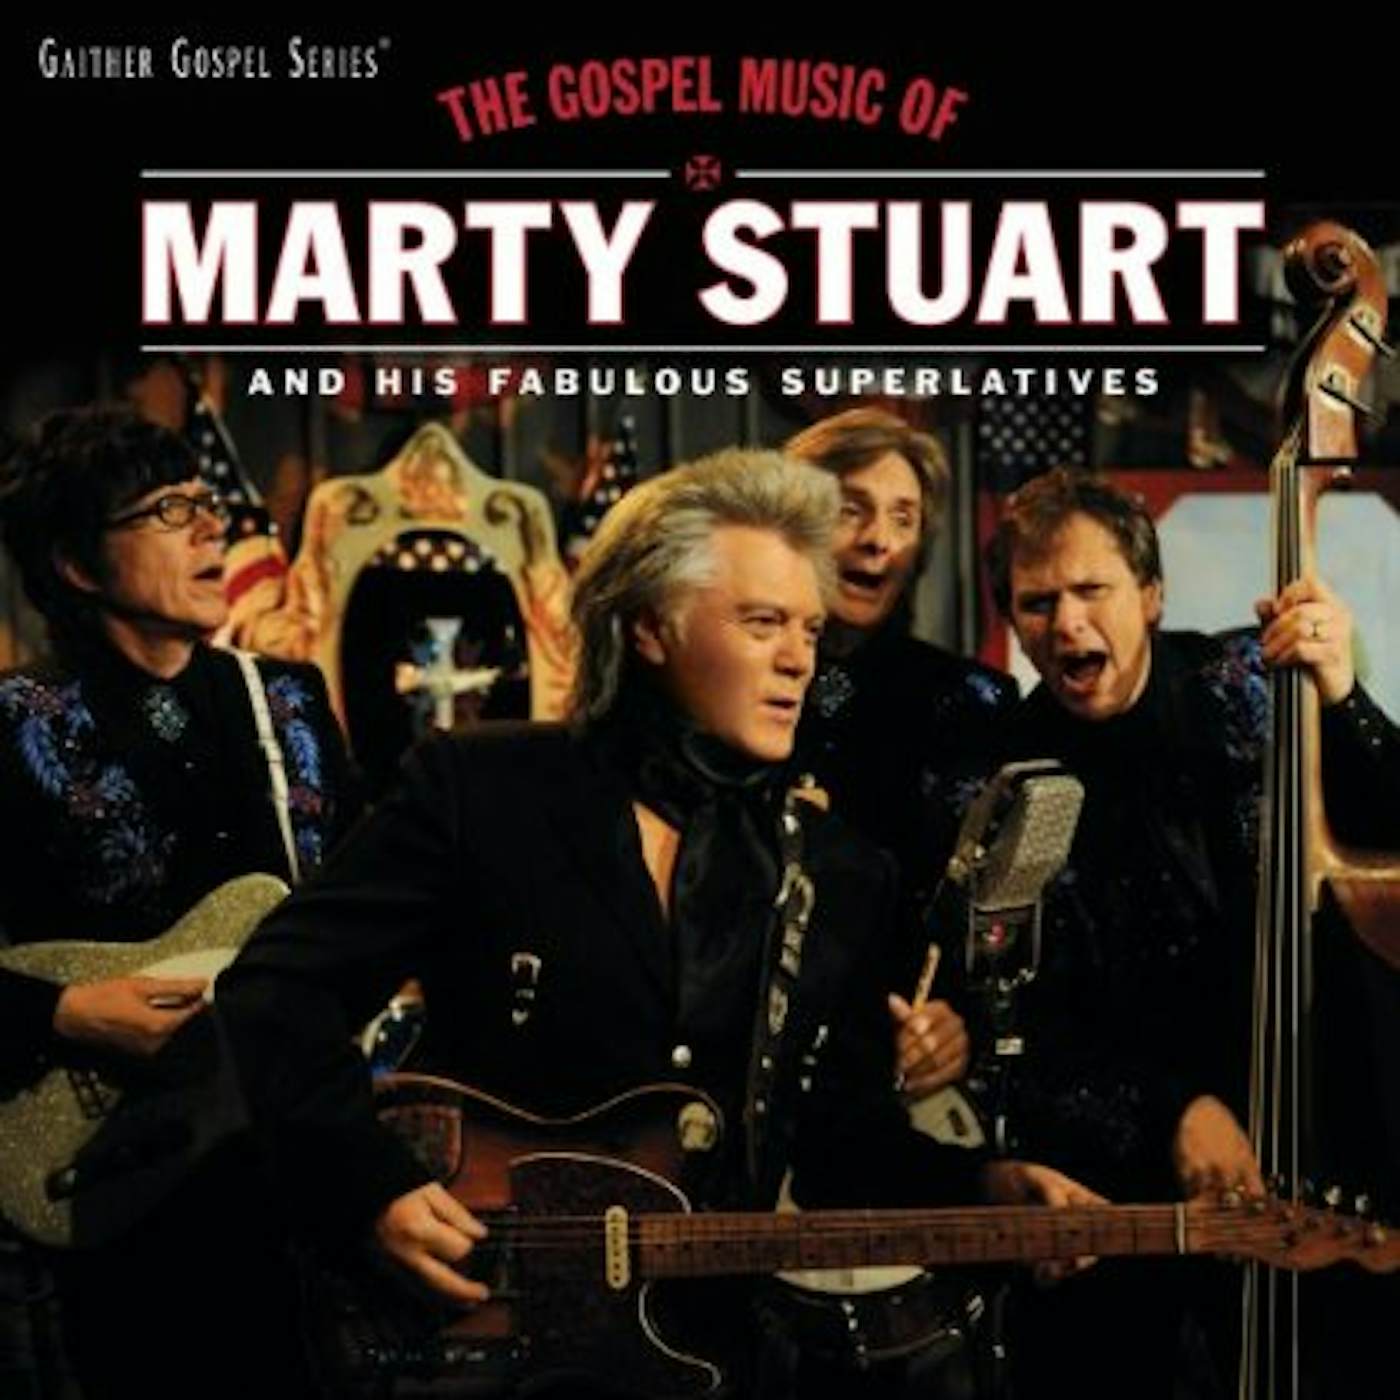 GOSPEL MUSIC OF MARTY STUART CD